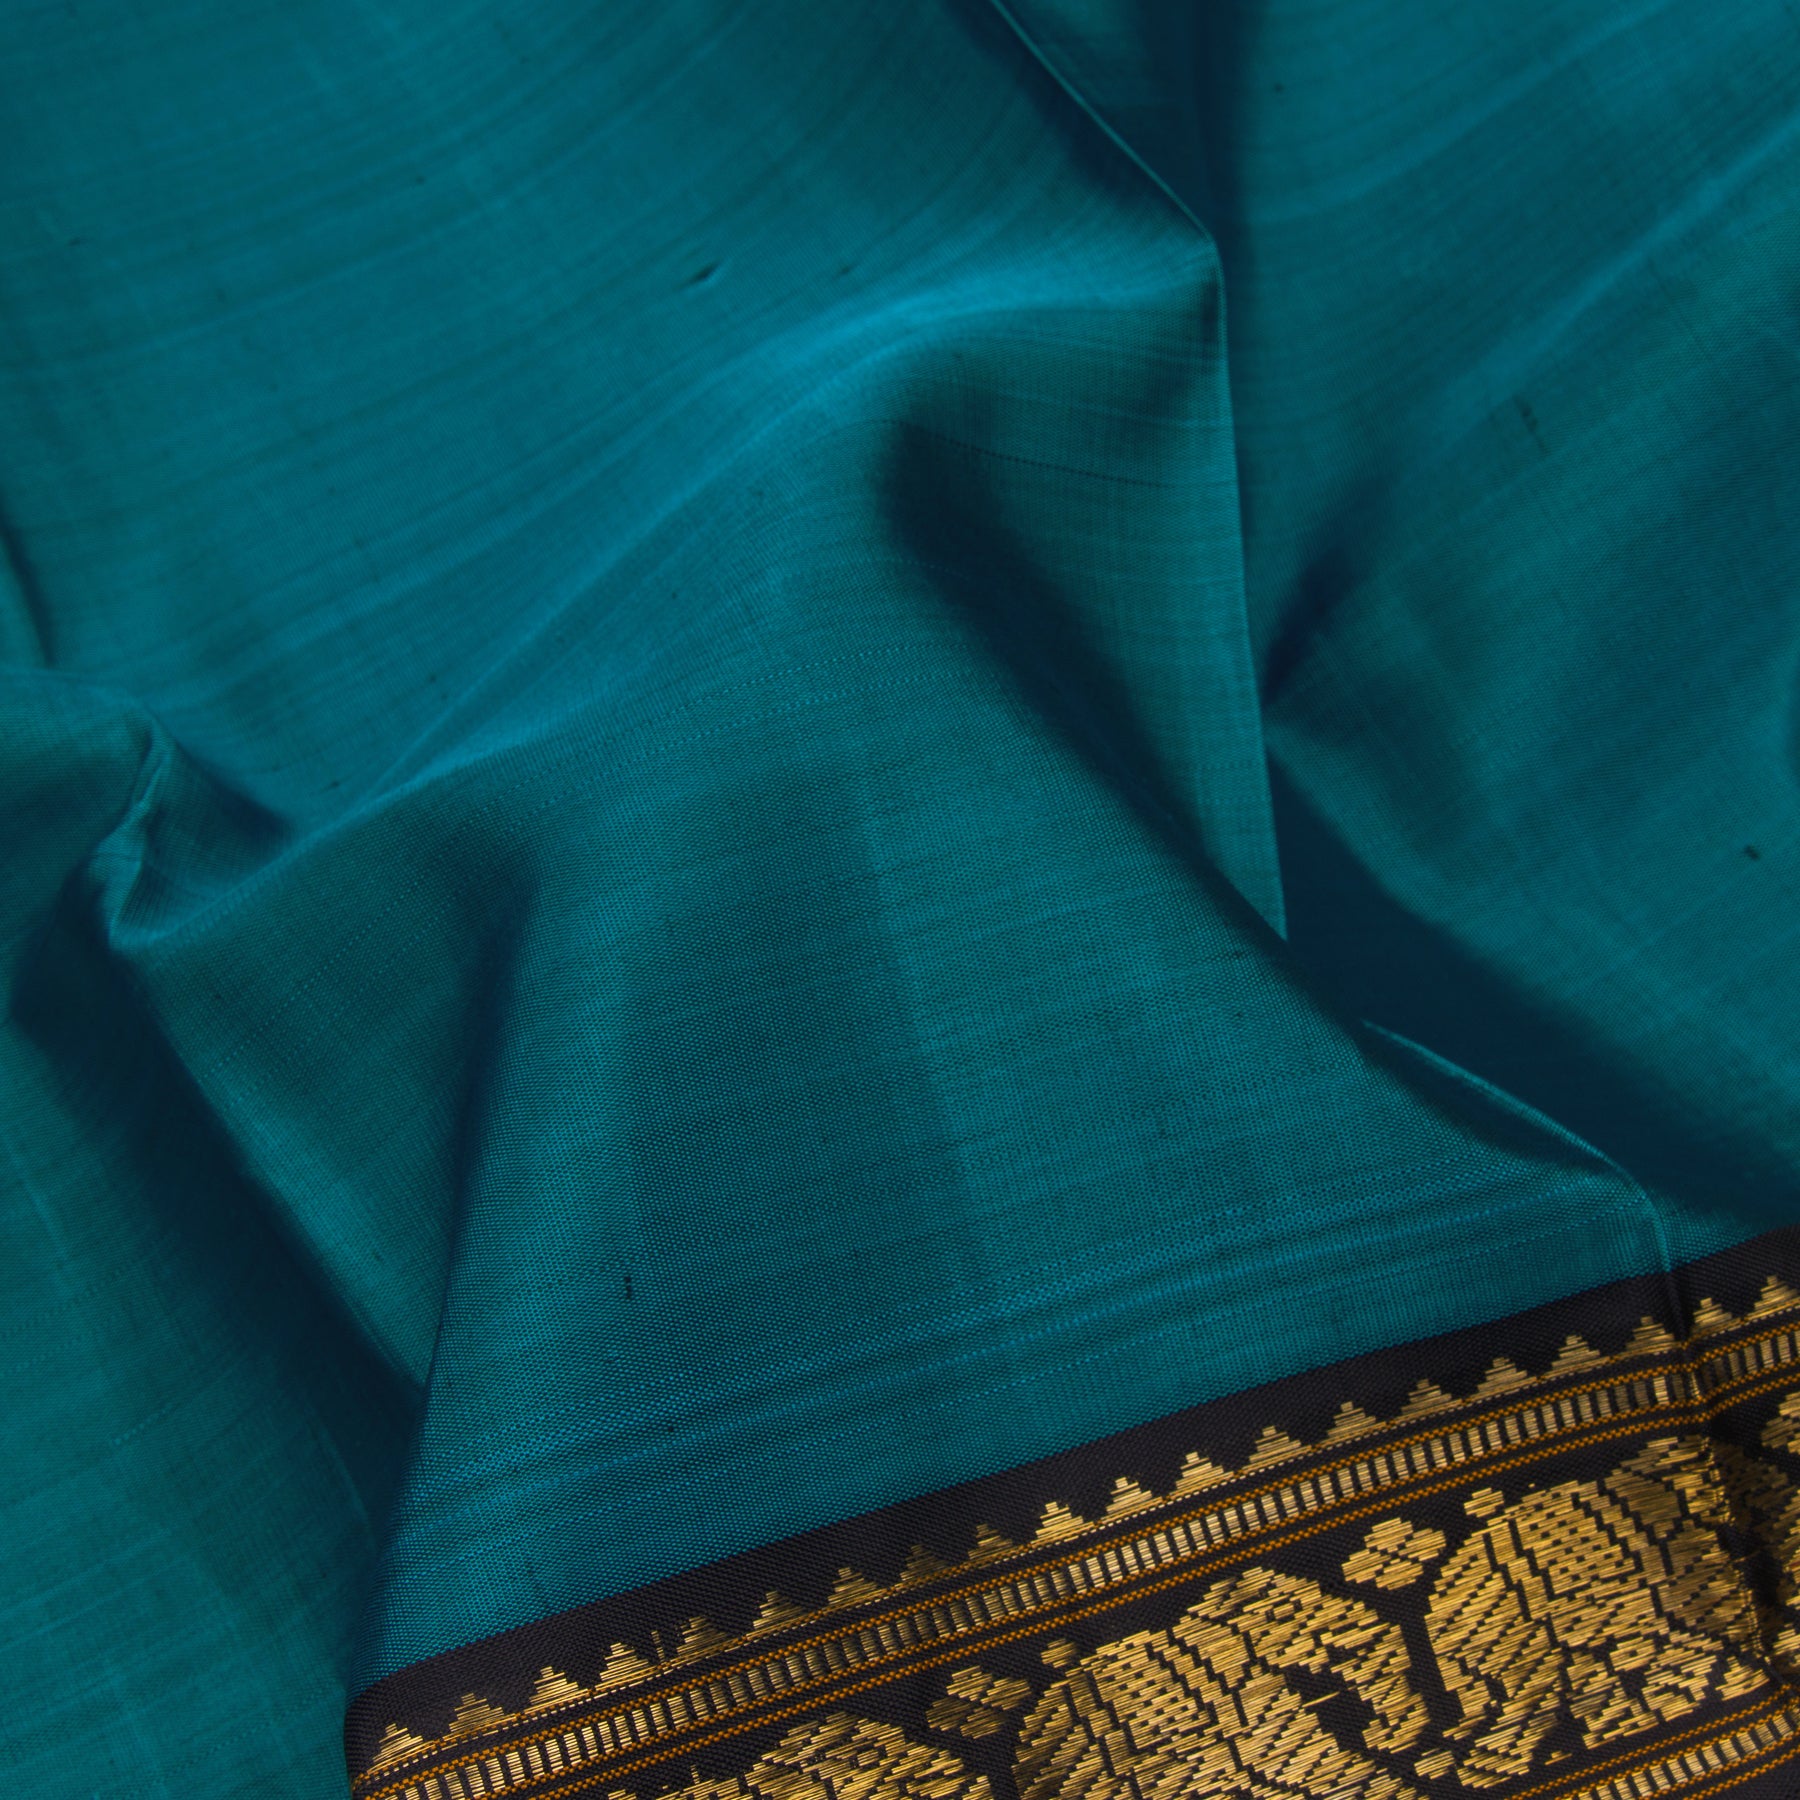 Kanakavalli Kanjivaram Silk Sari 22-611-HS001-11414 - Fabric View